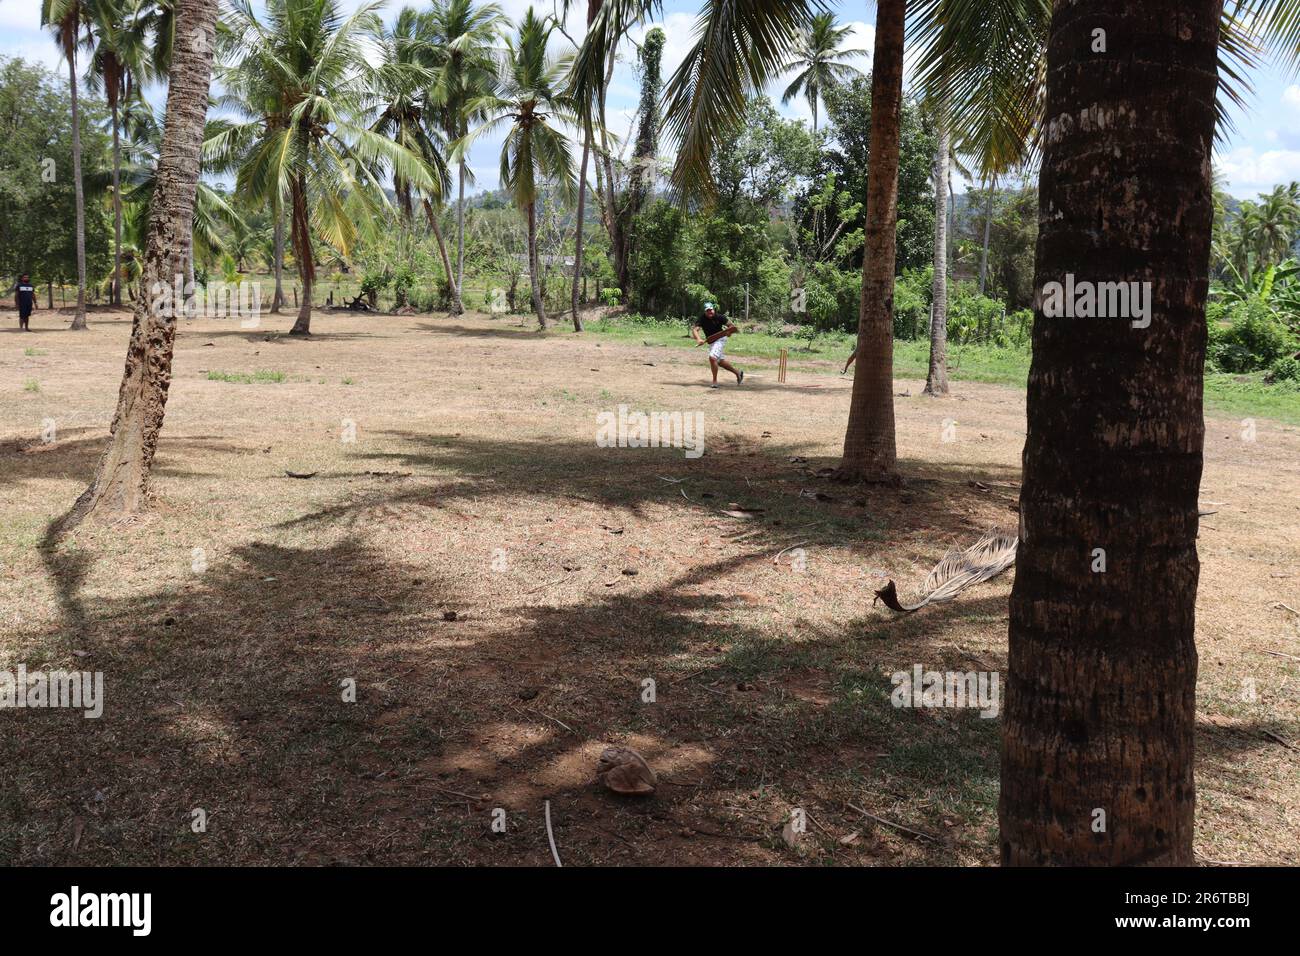 A walk in a coconut estate Stock Photo